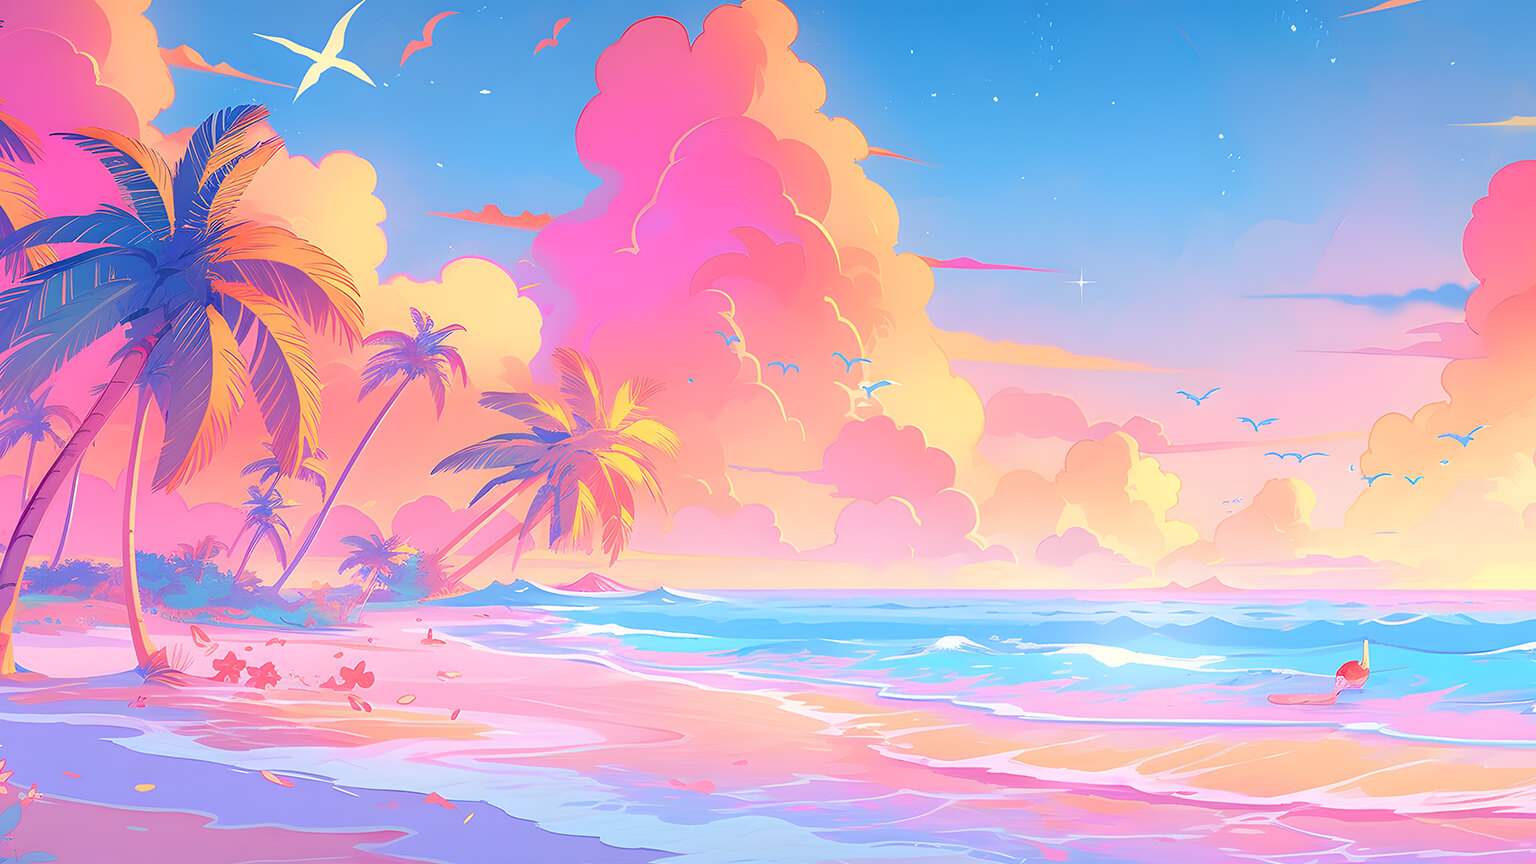 Colorful Summer Beach Desktop Wallpaper - Summer Wallpaper 4K